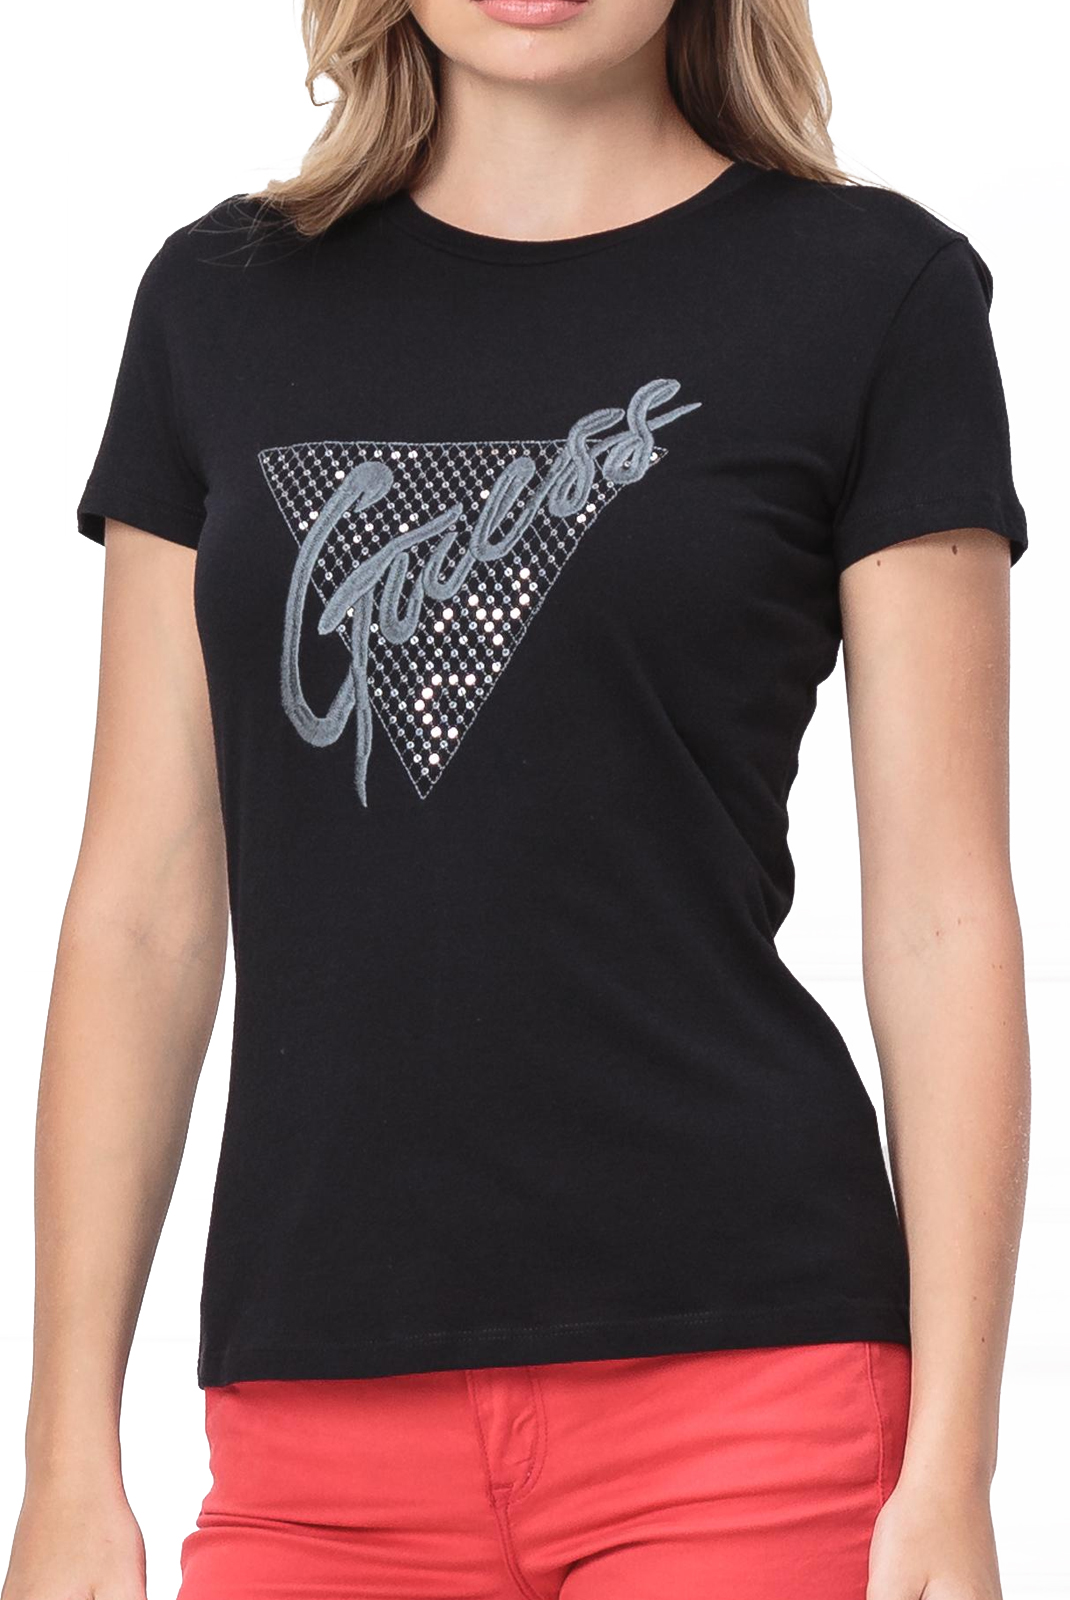 Tee-shirt noir strasse print femme Guess - W92i53